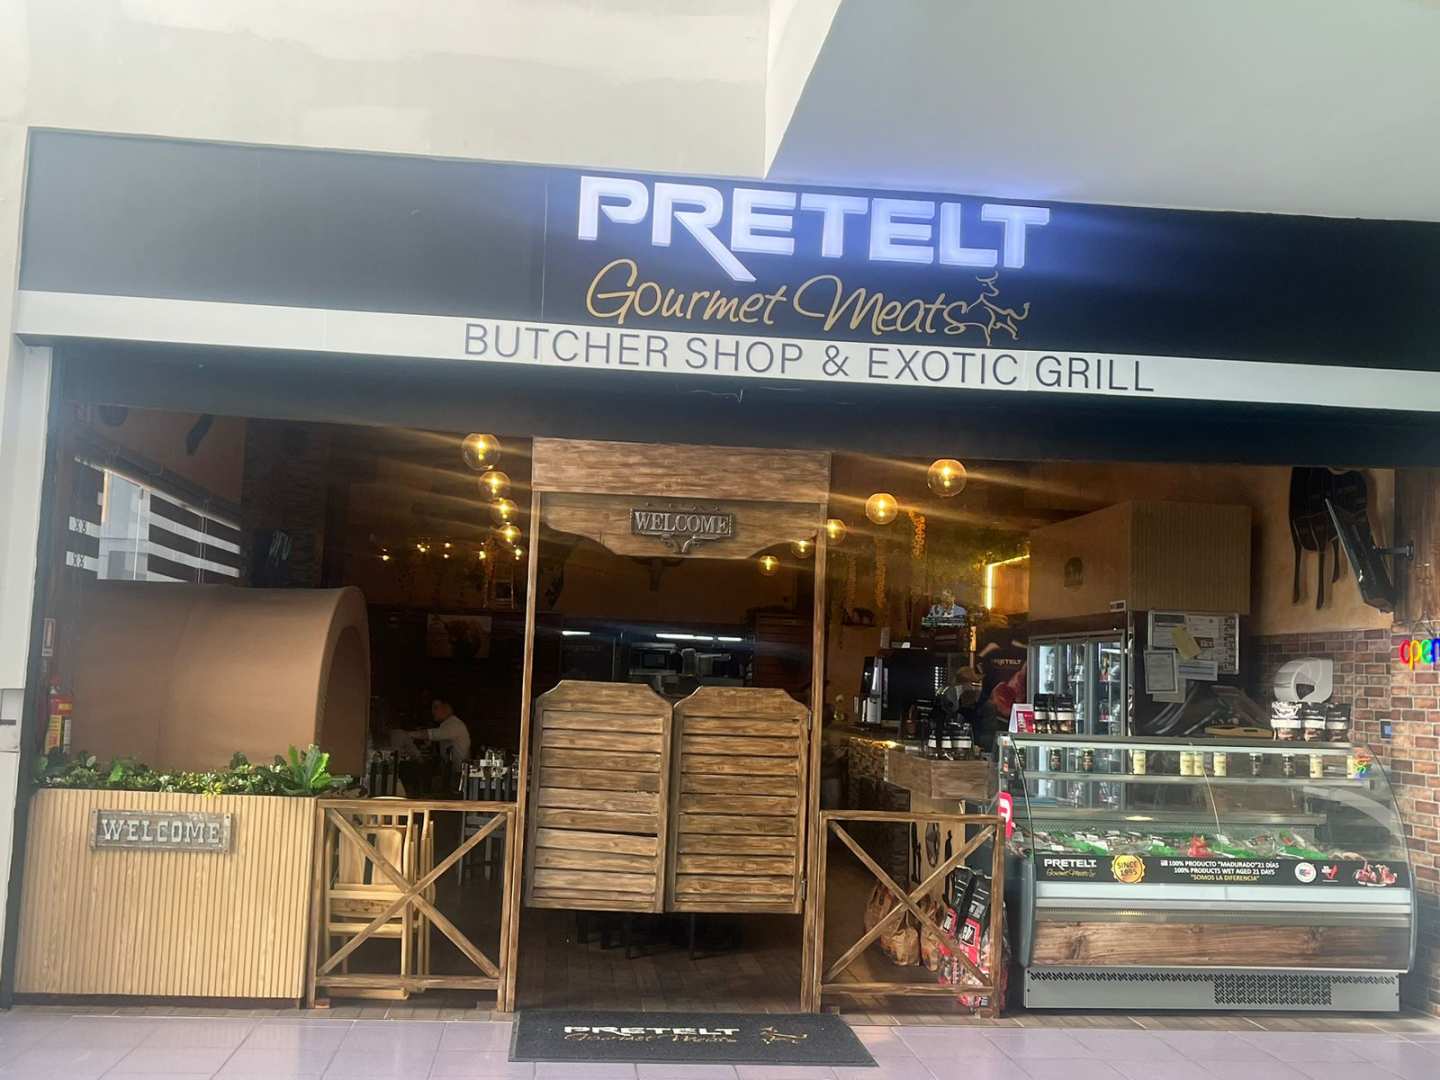 Pretelt Gourmets Meats (Albrook Mall)